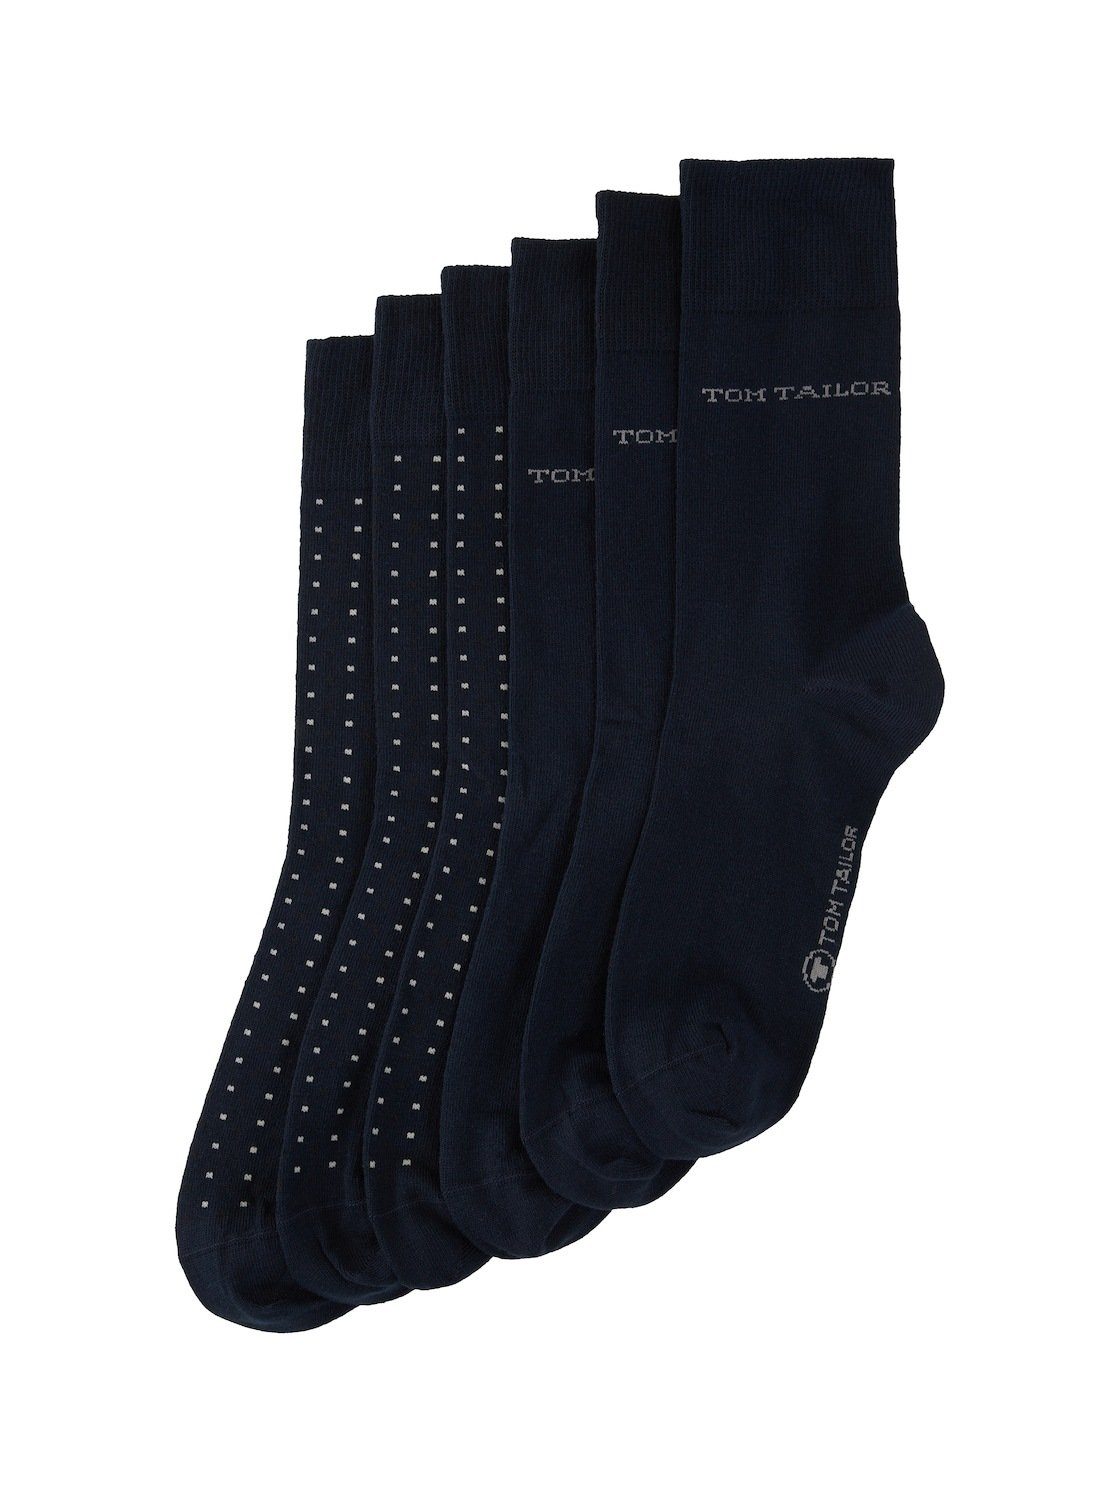 Sechserpack) Socken TOM Socken Sechserpack Basic (im TAILOR